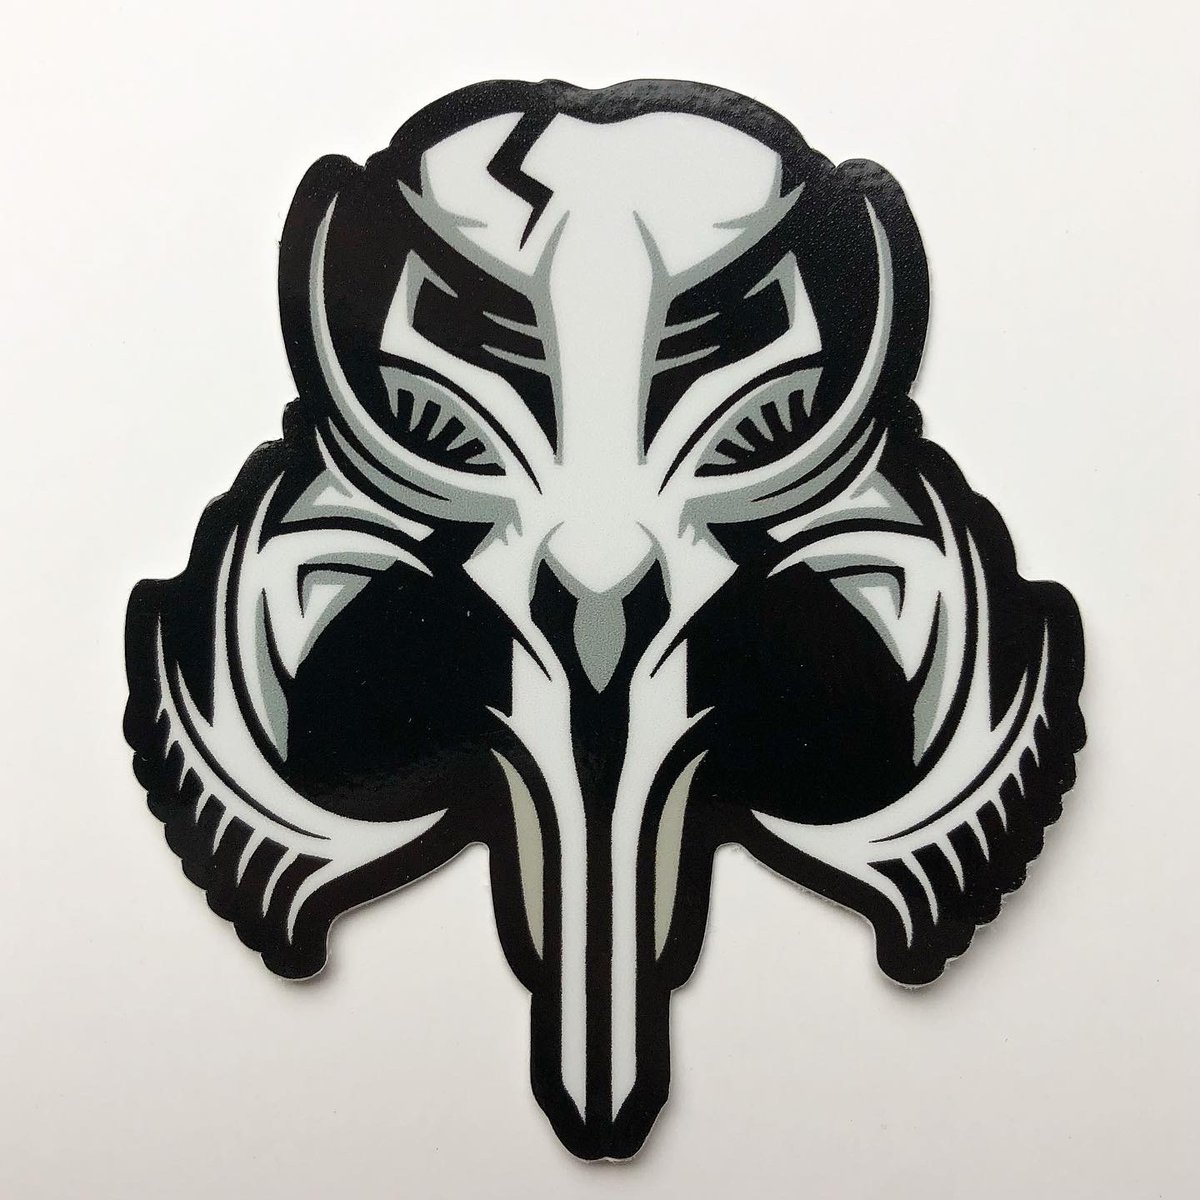 Image of 'Myth Skull' Sticker